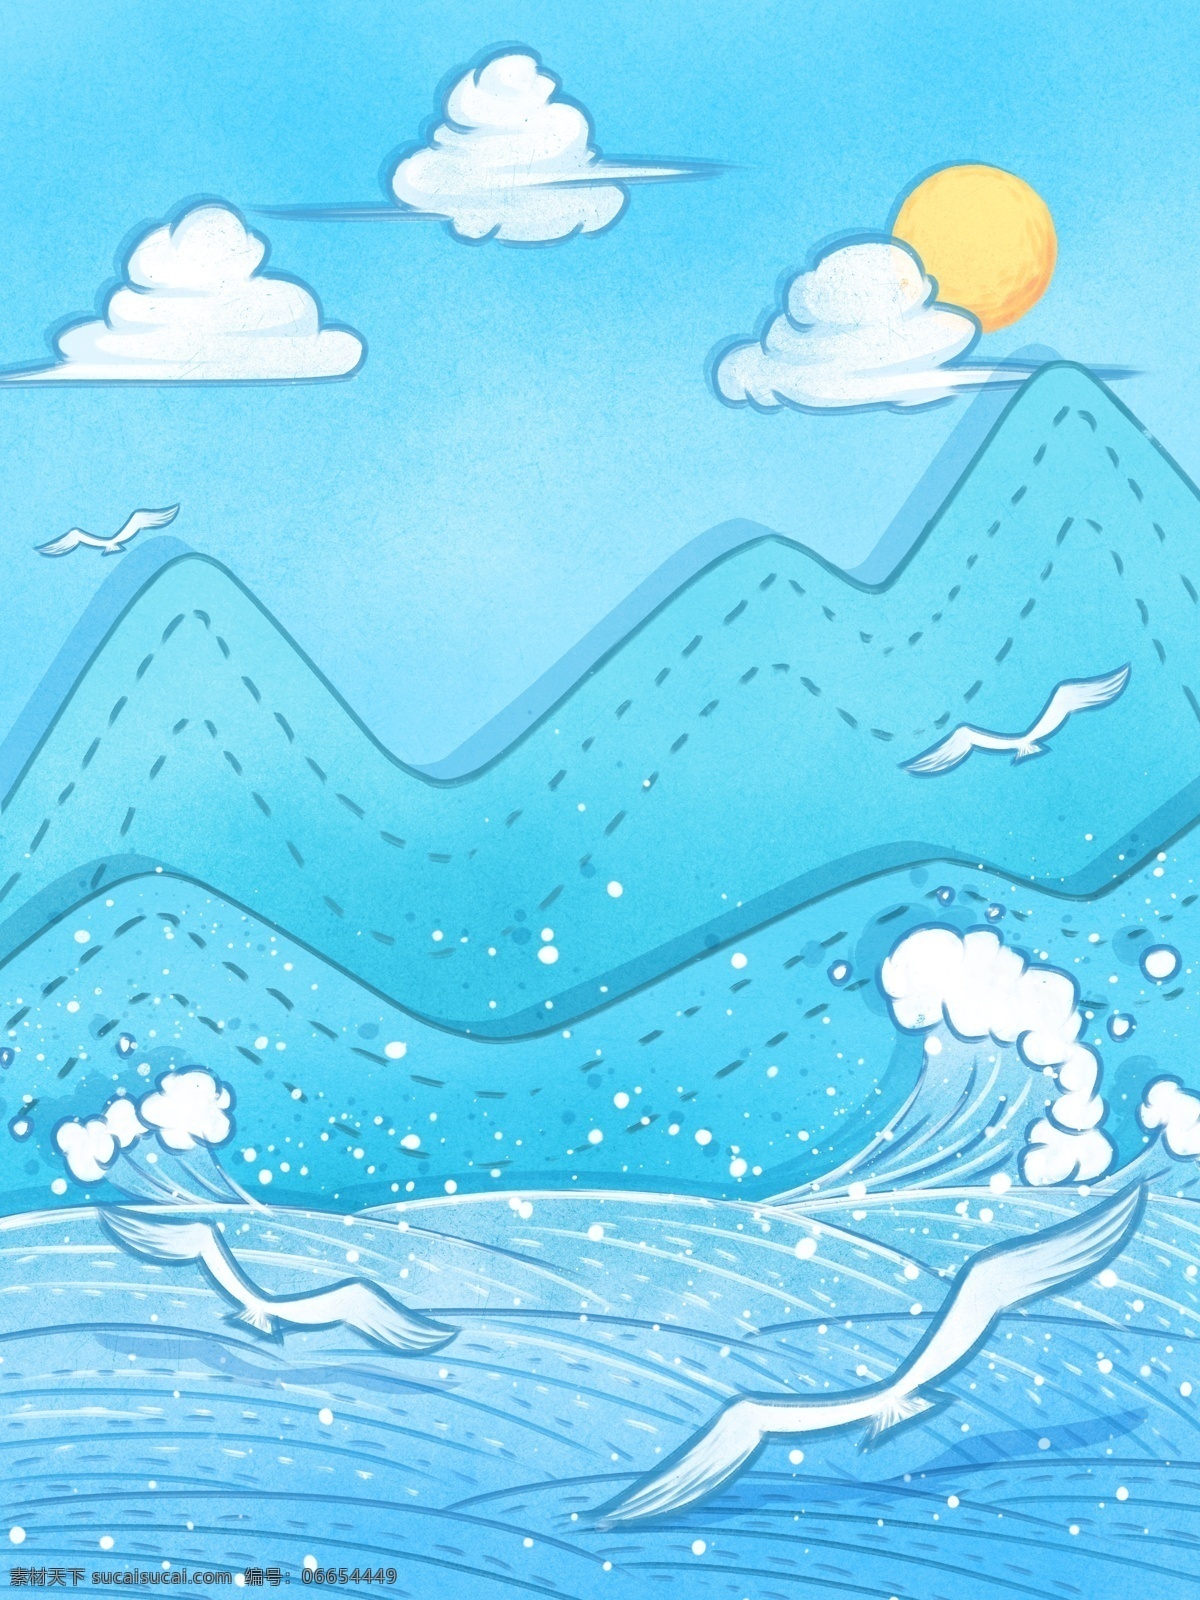 彩绘 冬季 雪山 大海 背景 蓝色 海洋 海滩 白云 蓝色背景 冬天 背景设计 彩绘背景 手绘背景 通用背景 特邀背景 促销背景 背景展板图 背景图